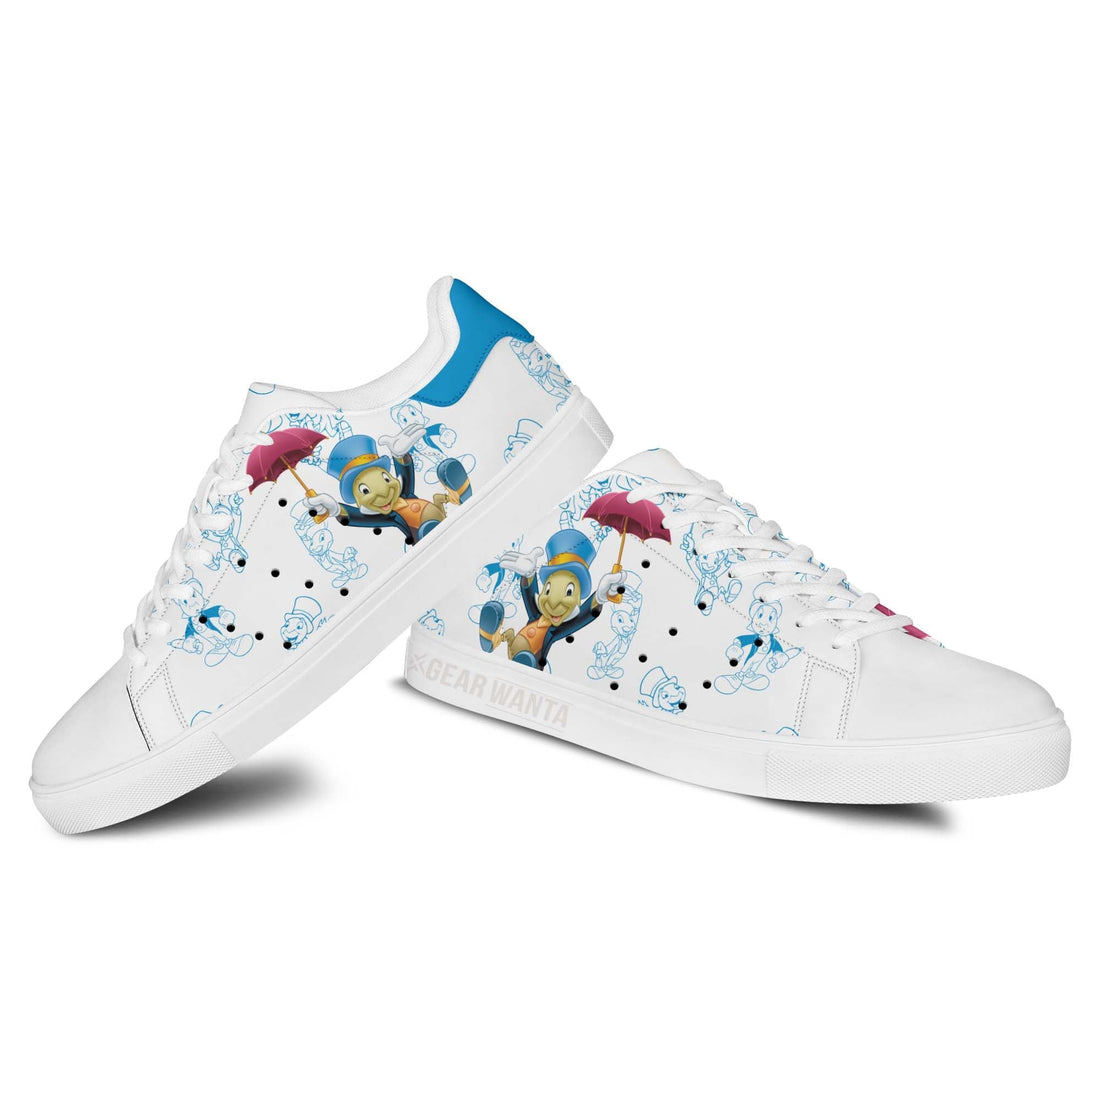 Jiminy Cricket Stan Shoes Custom Pinocchio Cartoon Shoes-Gear Wanta